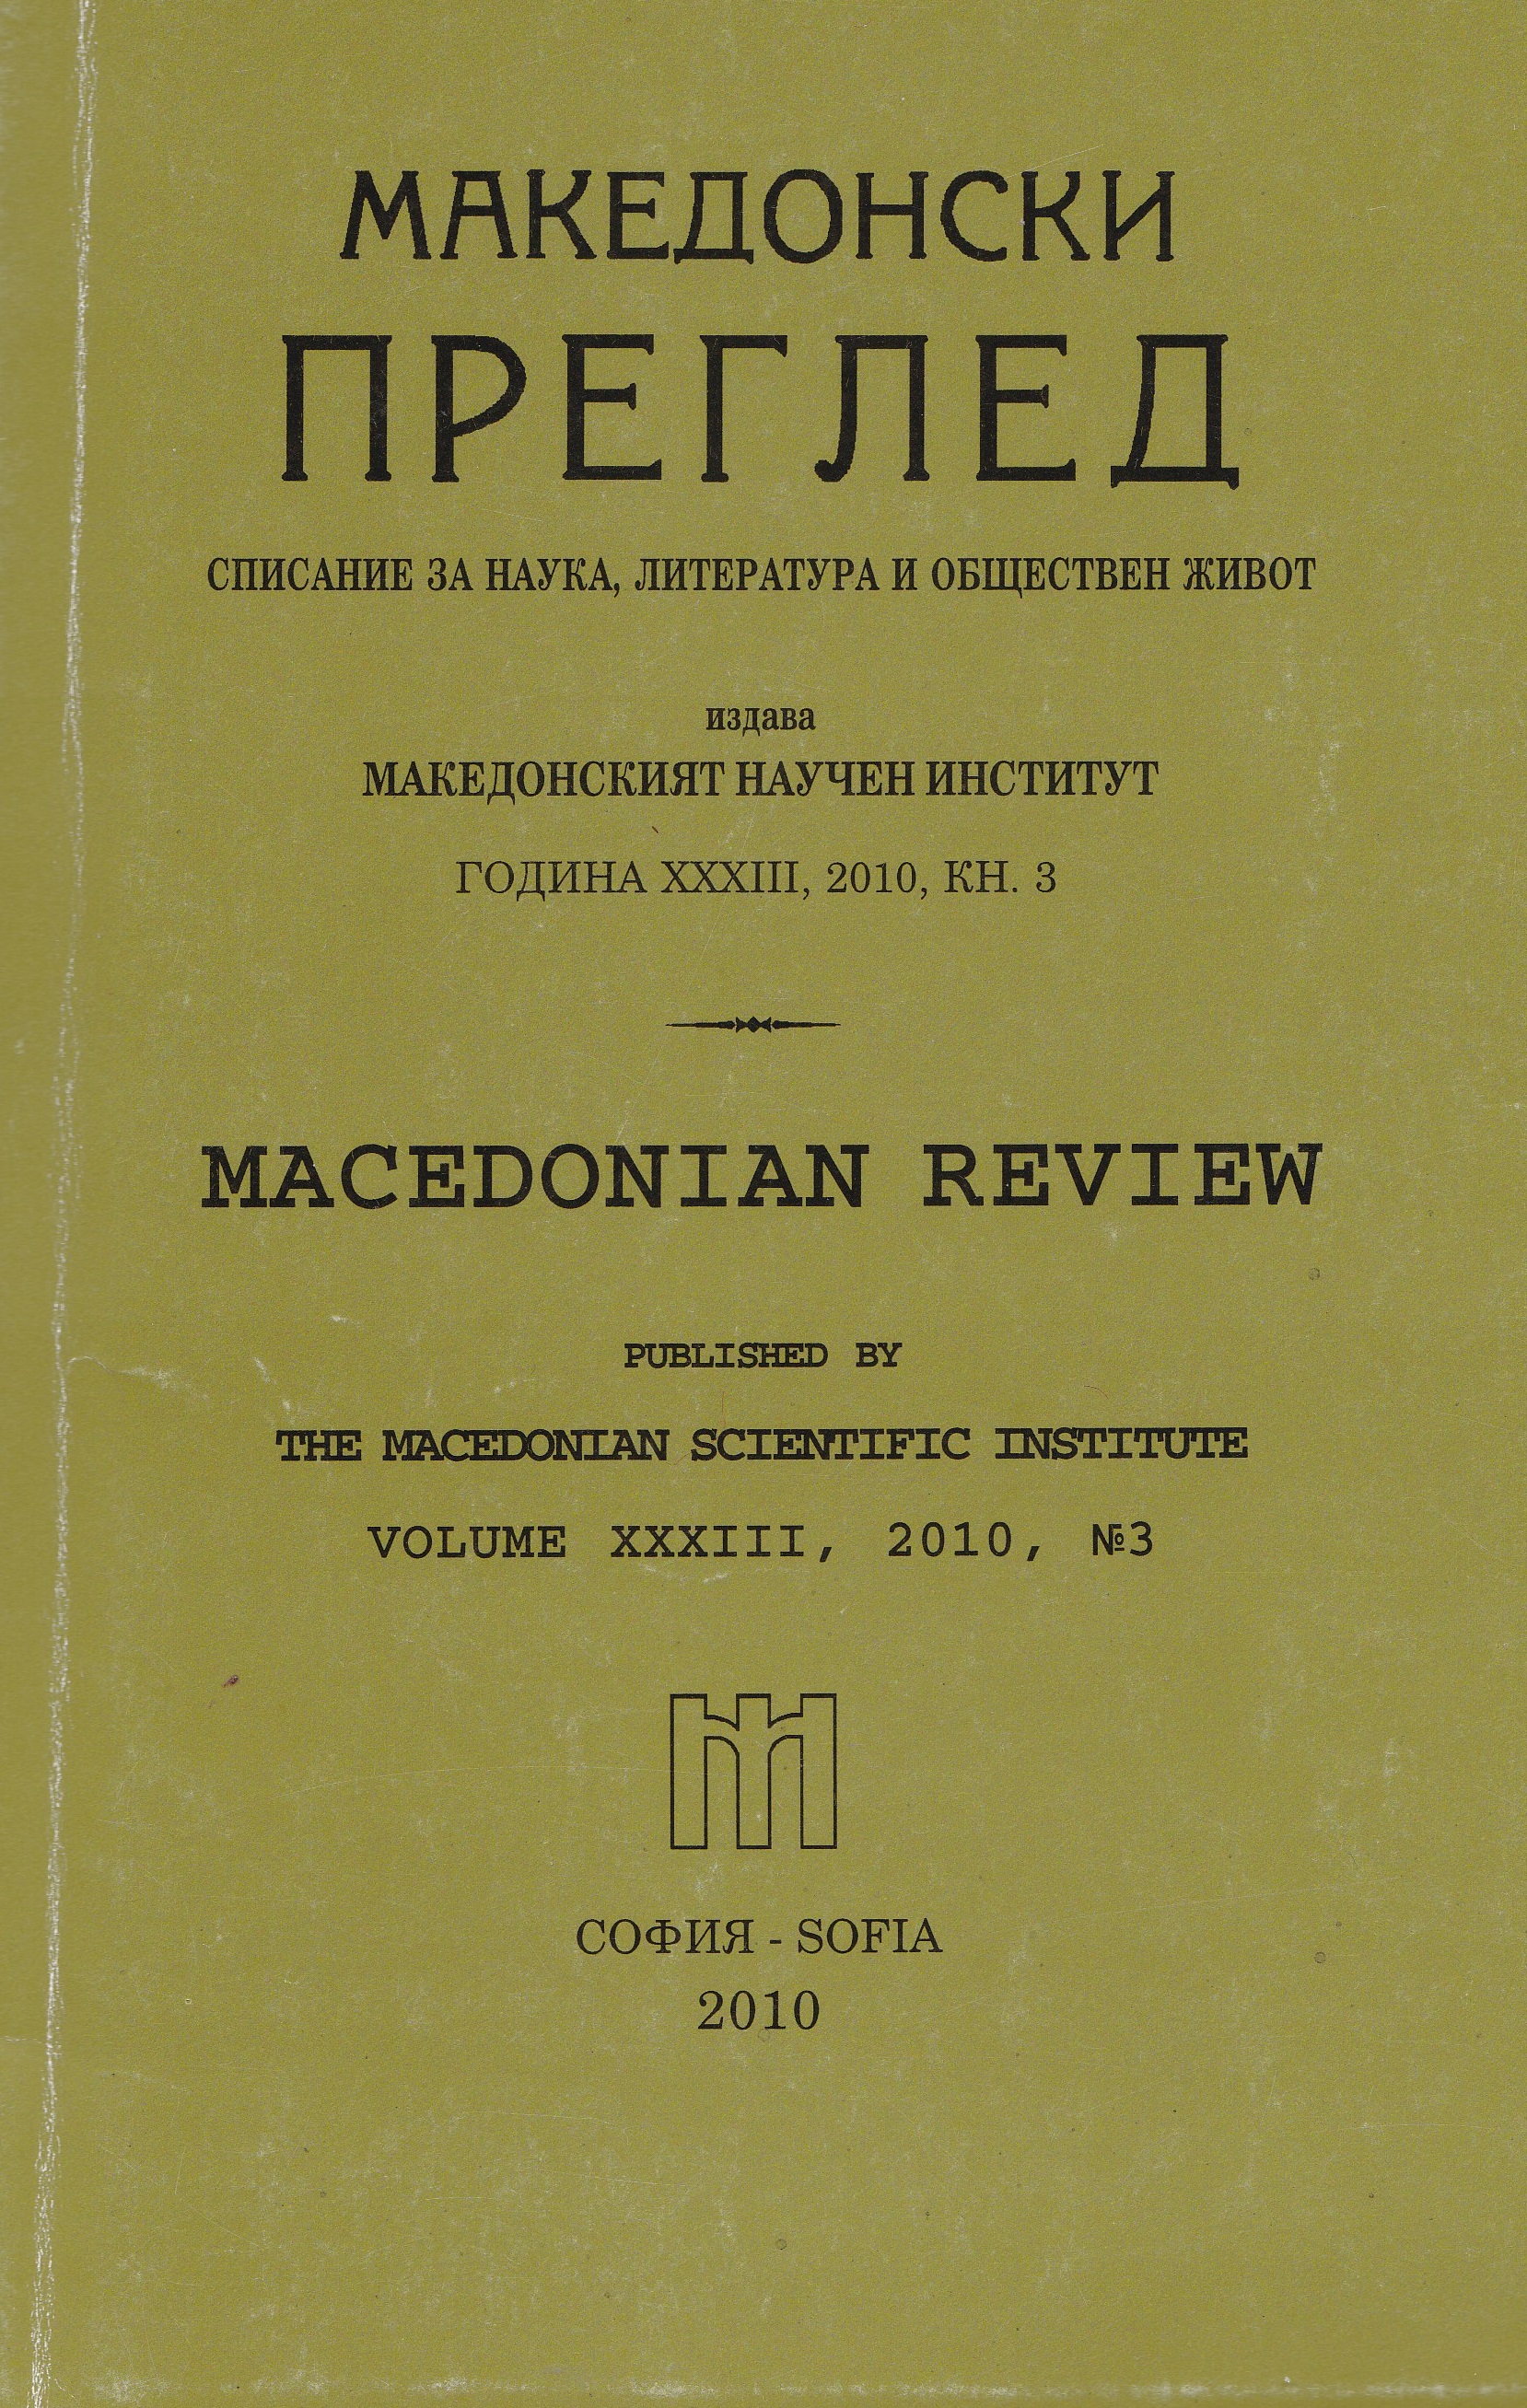 Македонисткият национализъм, държавотворството и демократизацията в Република Македония